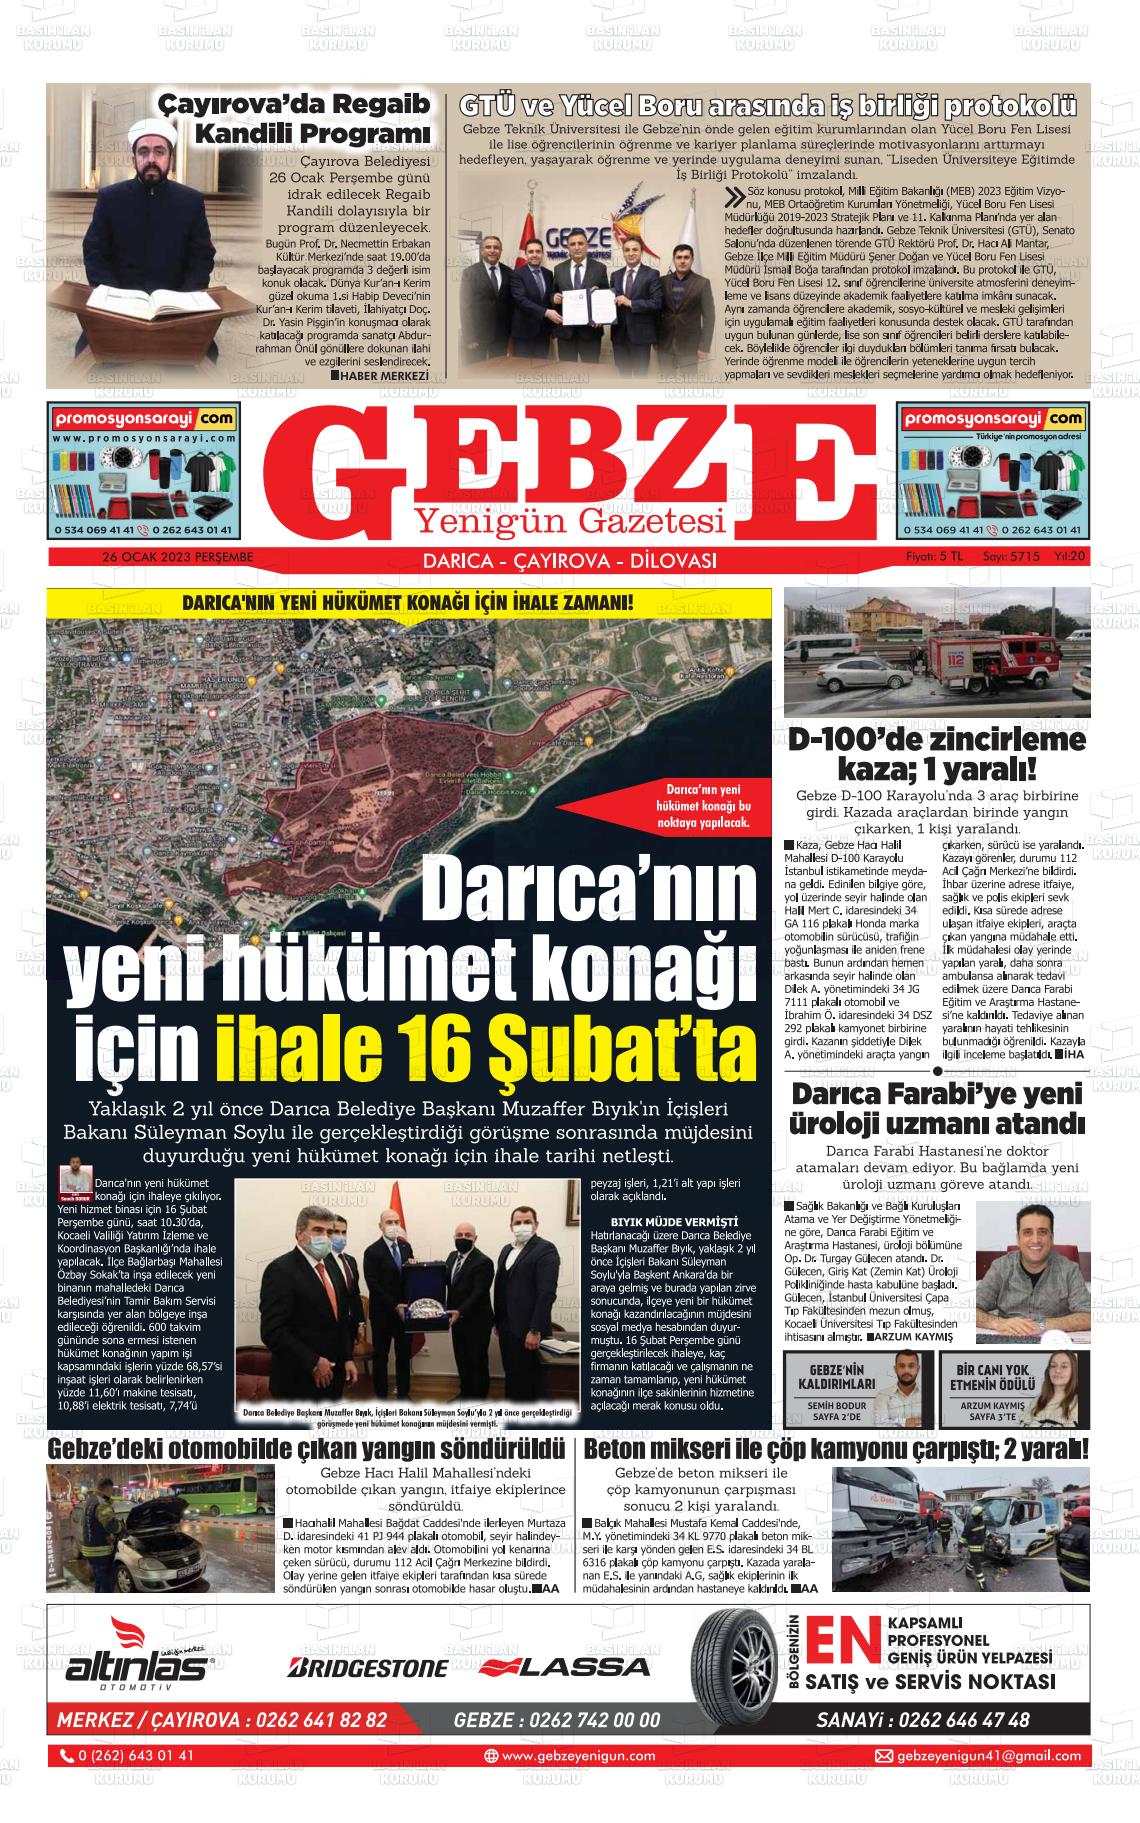 26 Ocak 2023 Gebze Yenigün Gazete Manşeti